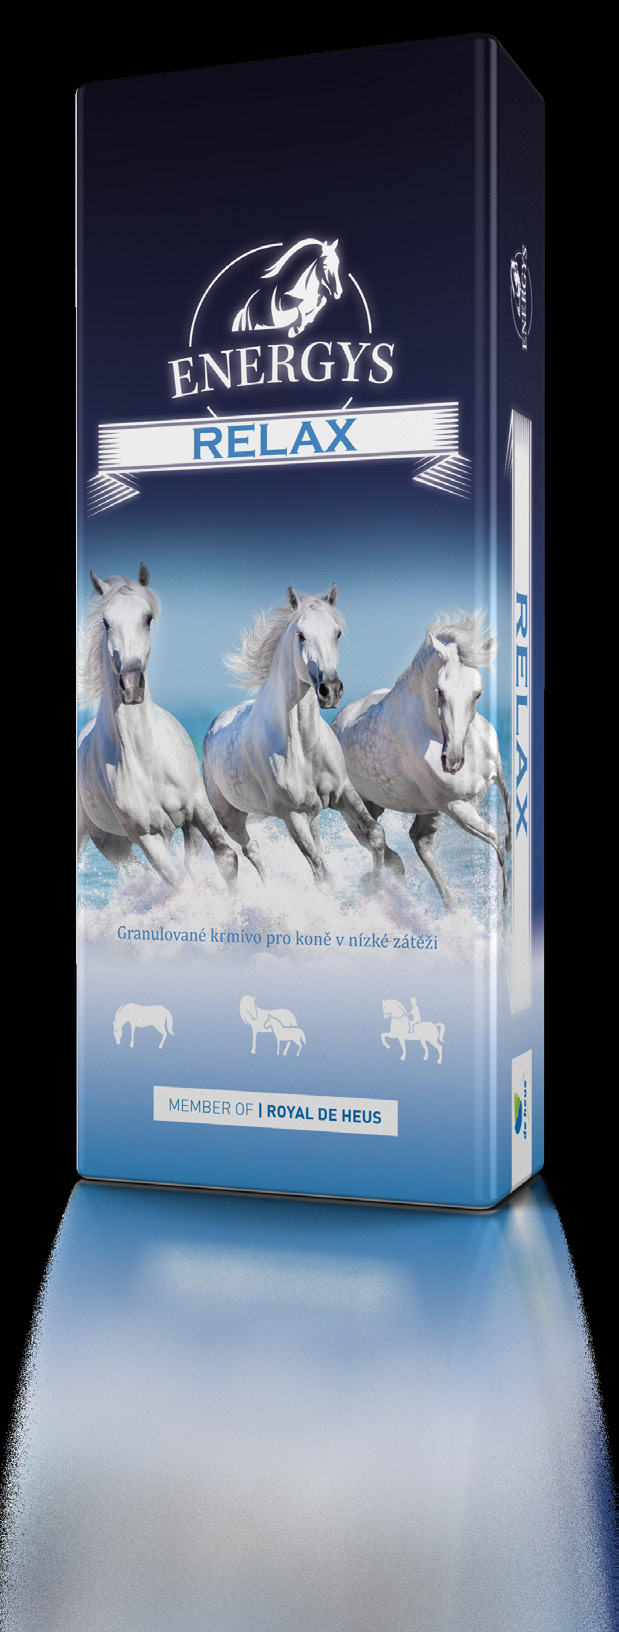 RLX Granulované krmivo pro koně v nízké zátěži Krmivo určeno především pro koně v nízké zátěži, pro hobby a provozní koně.